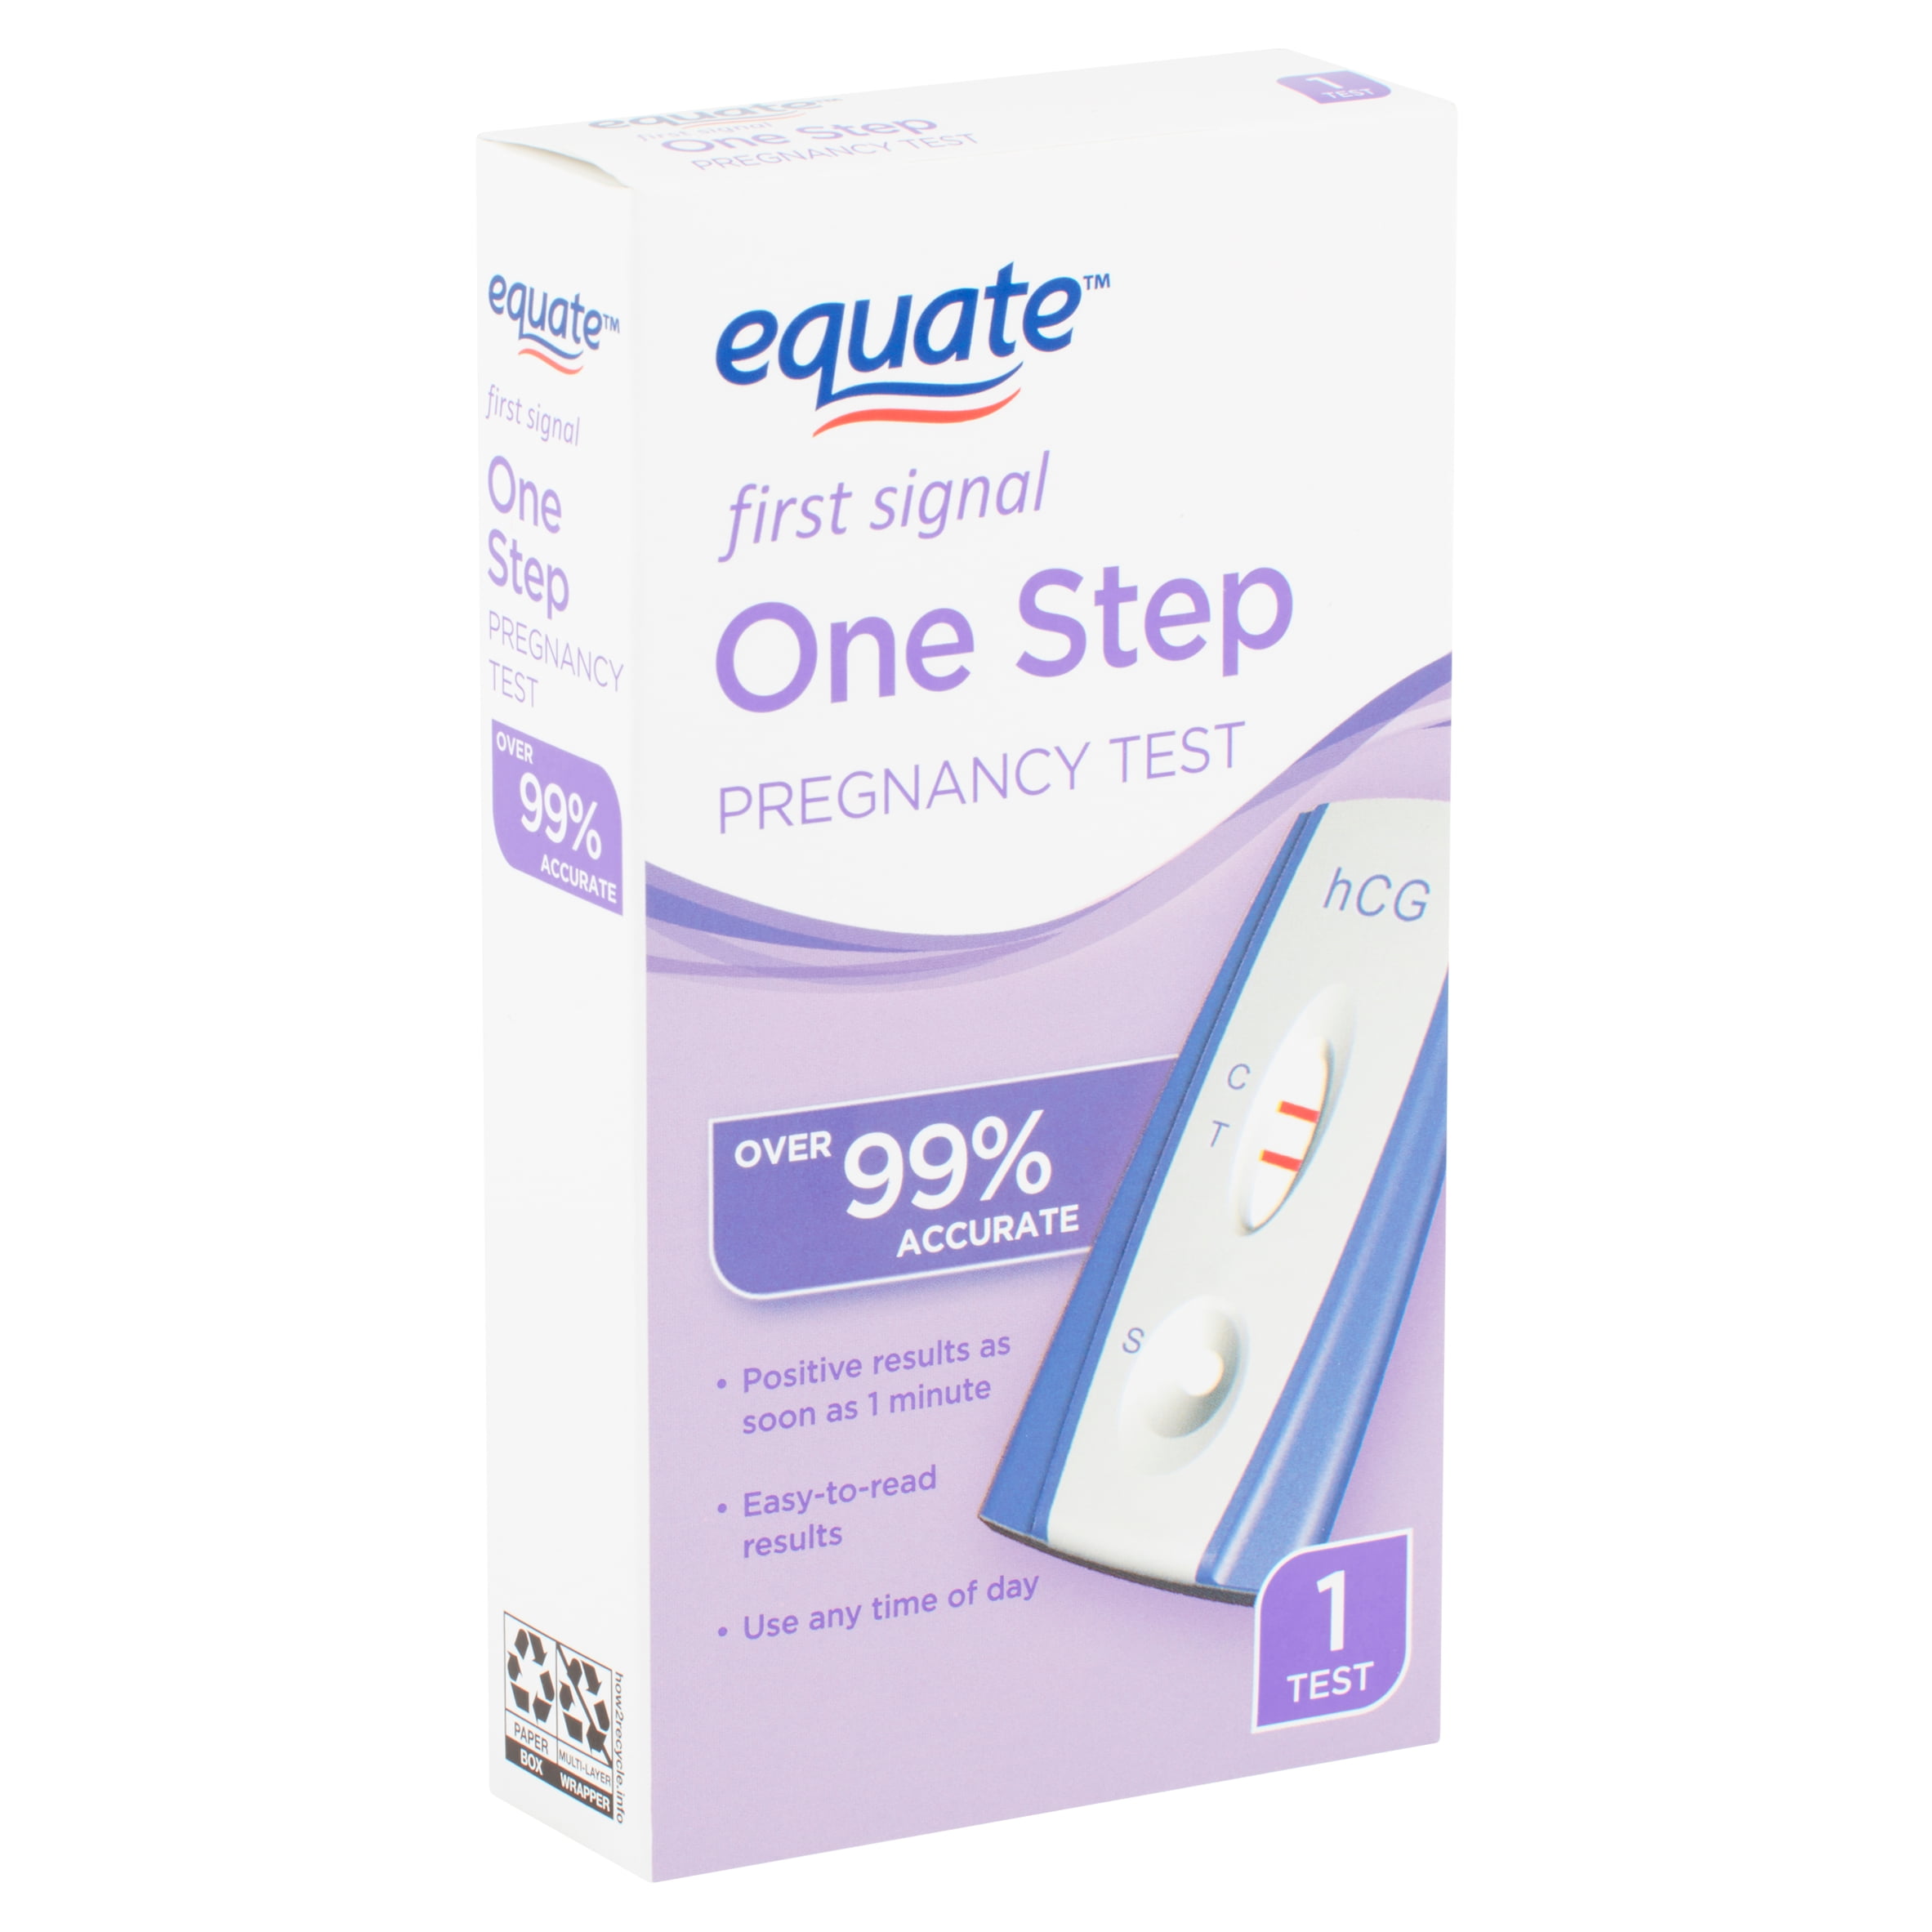 Equate First Signal One Step Pregnancy Test 1 Count Walmart Com Walmart Com